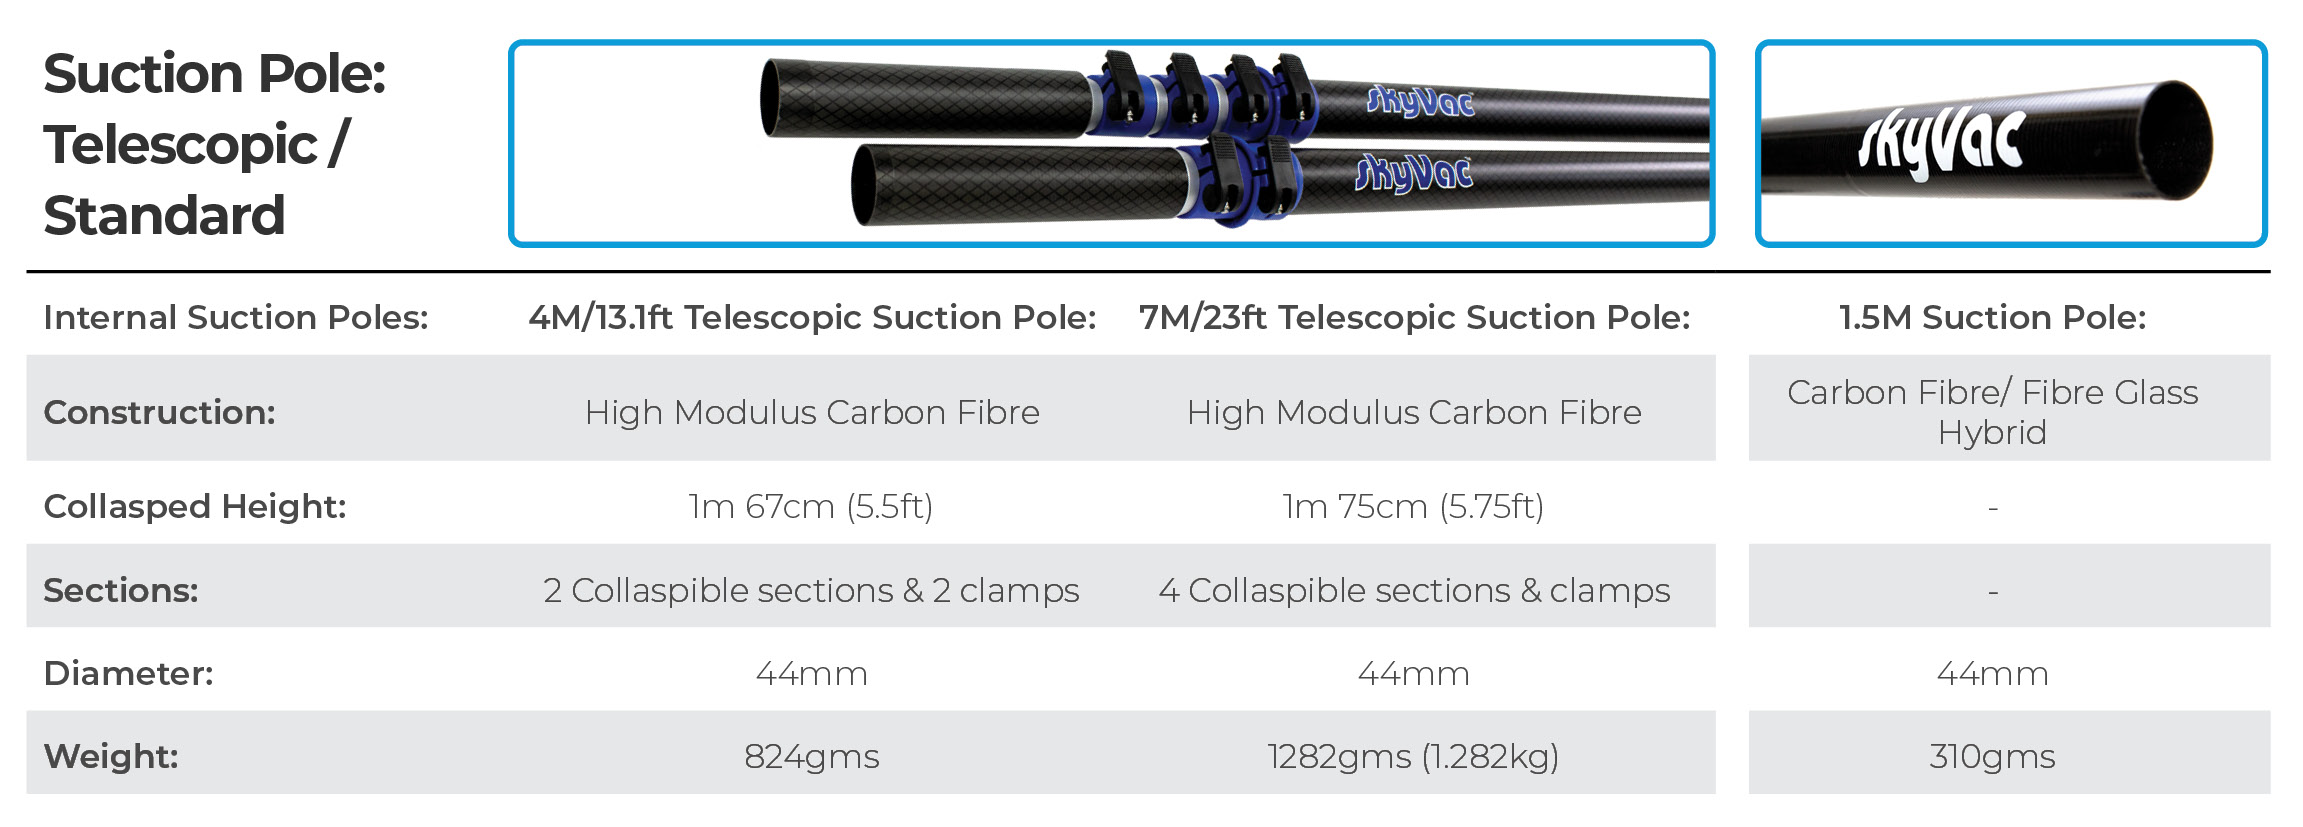 Telescopic Suction Poles 